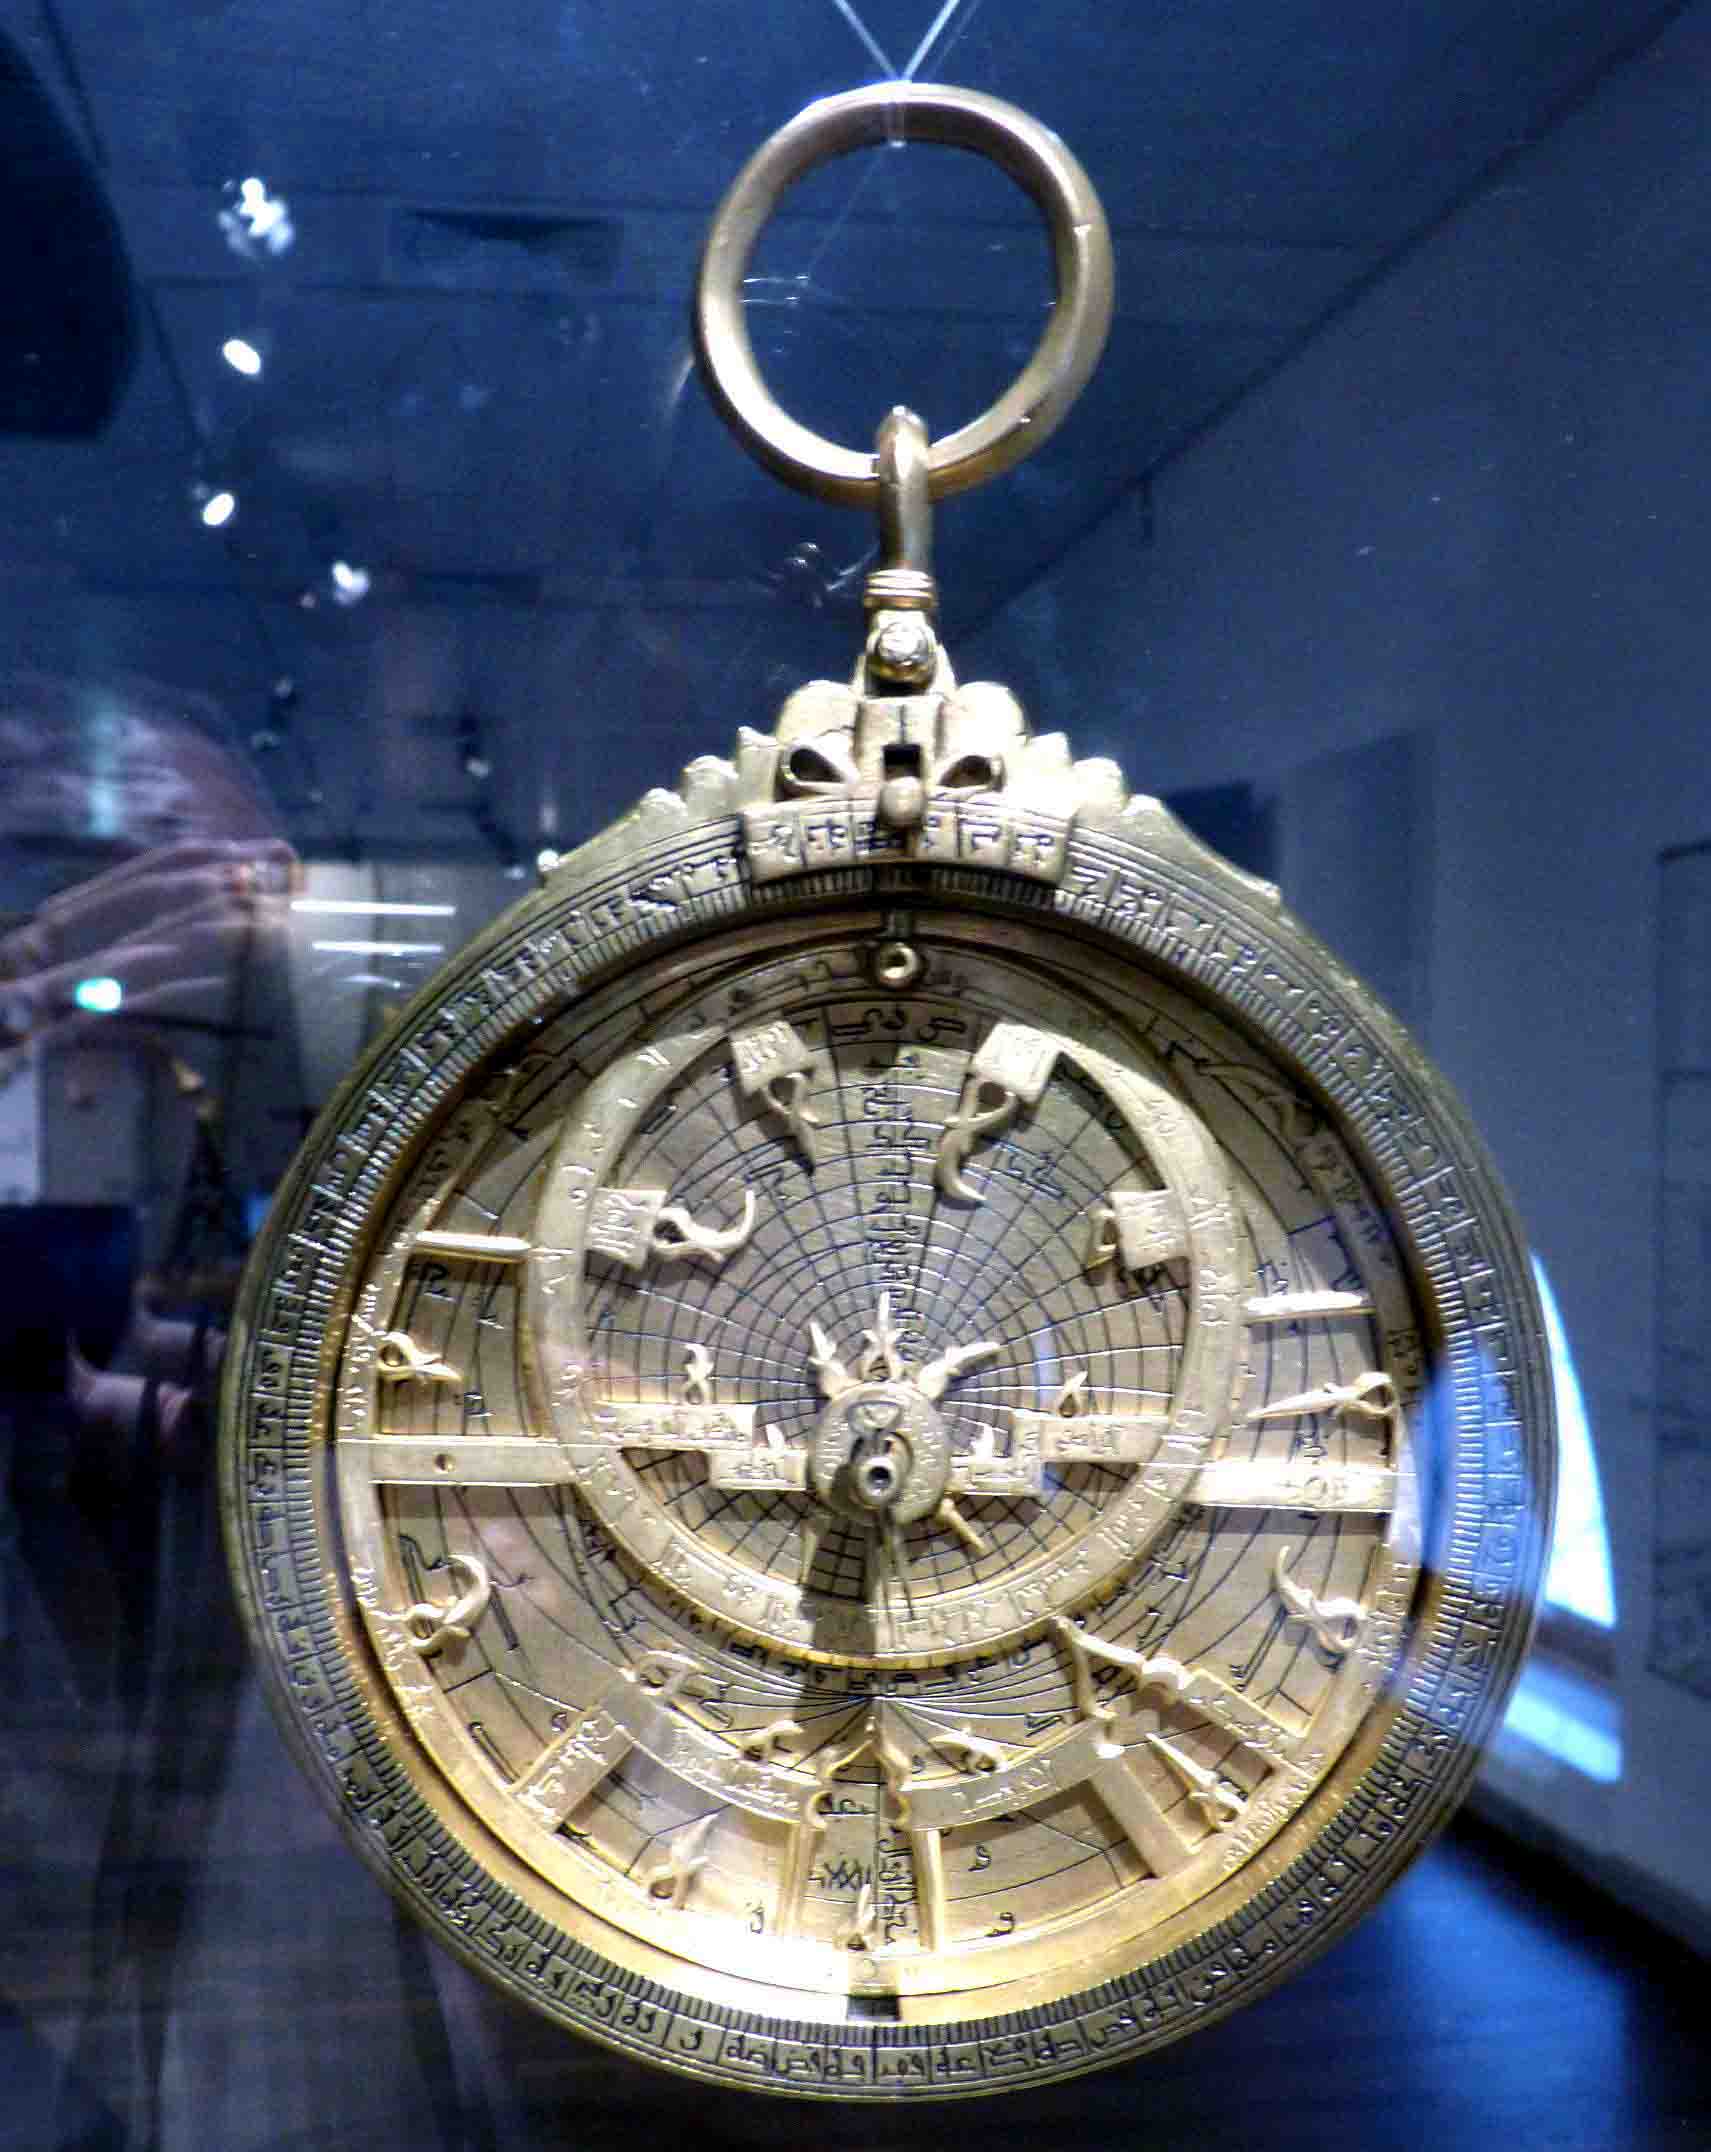 La diáspora de los astrolabios andalusíes